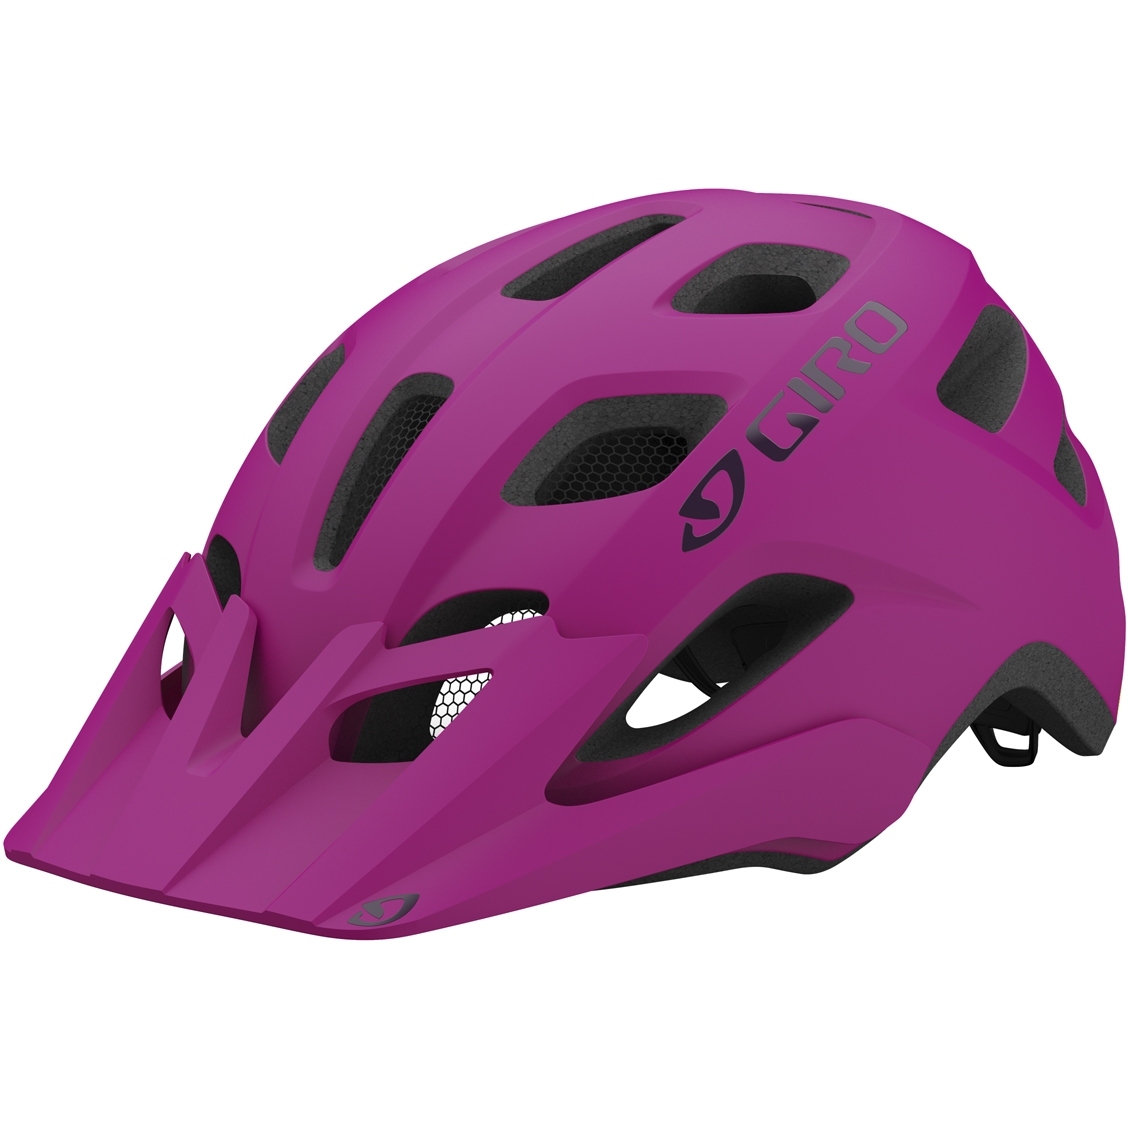 Produktbild von Giro Tremor MIPS Helm Kinder - matte pink street